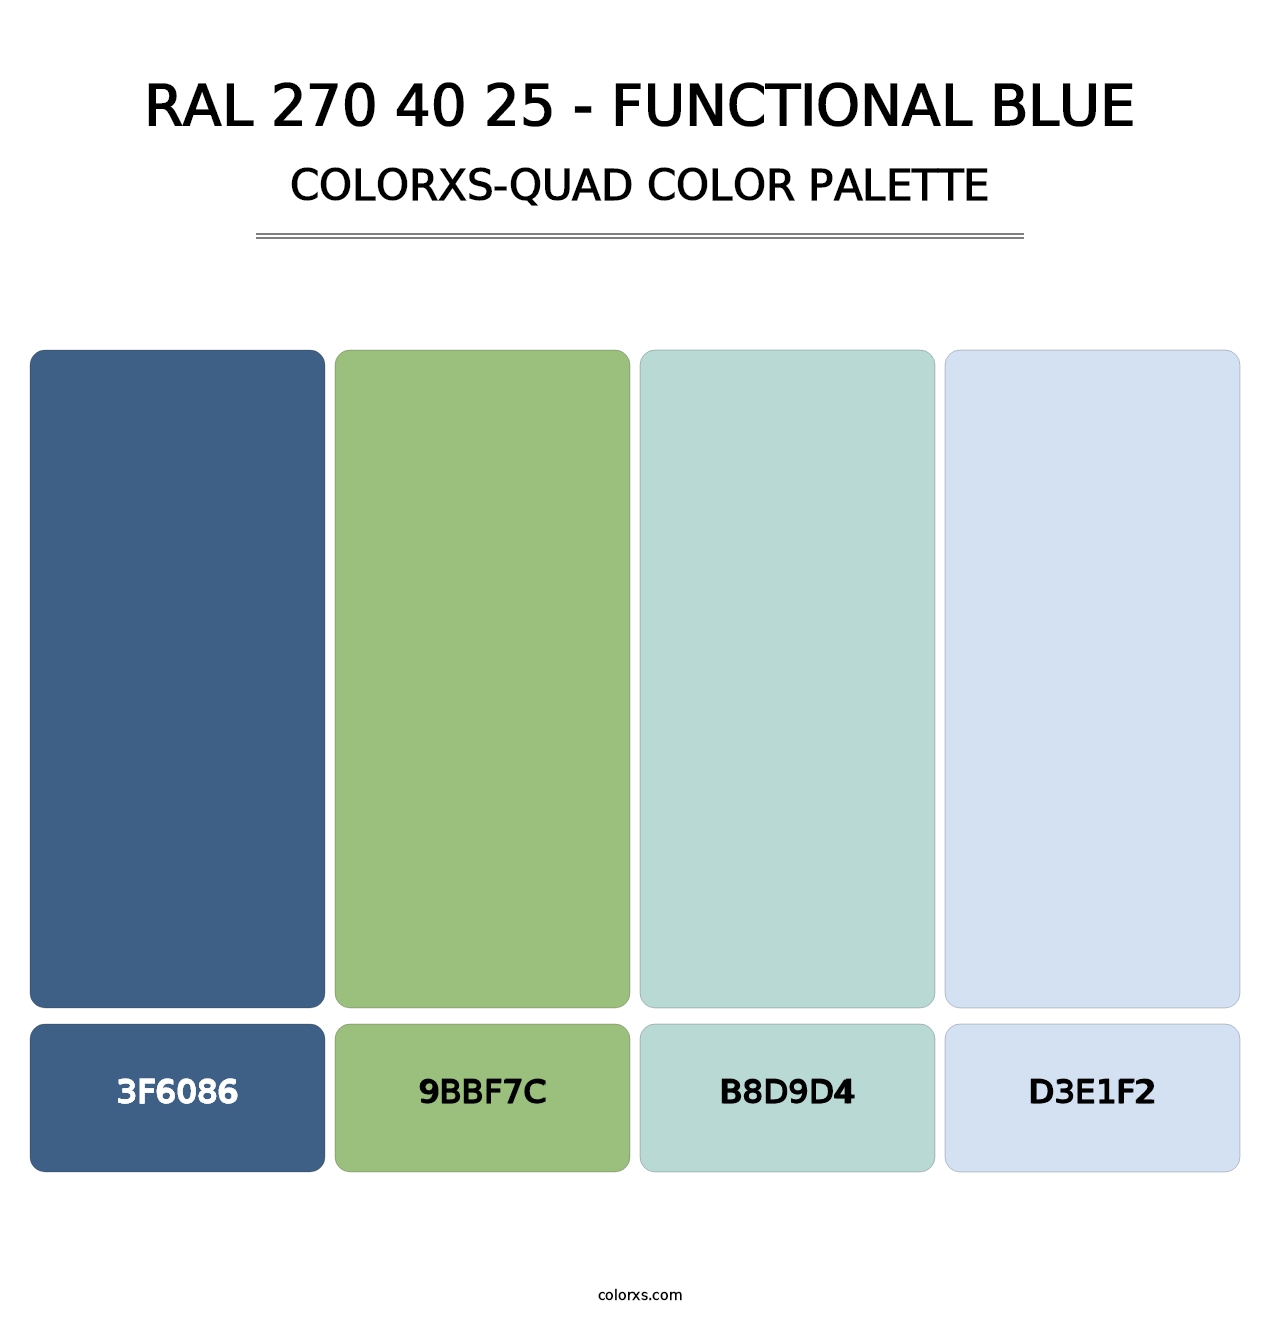 RAL 270 40 25 - Functional Blue - Colorxs Quad Palette